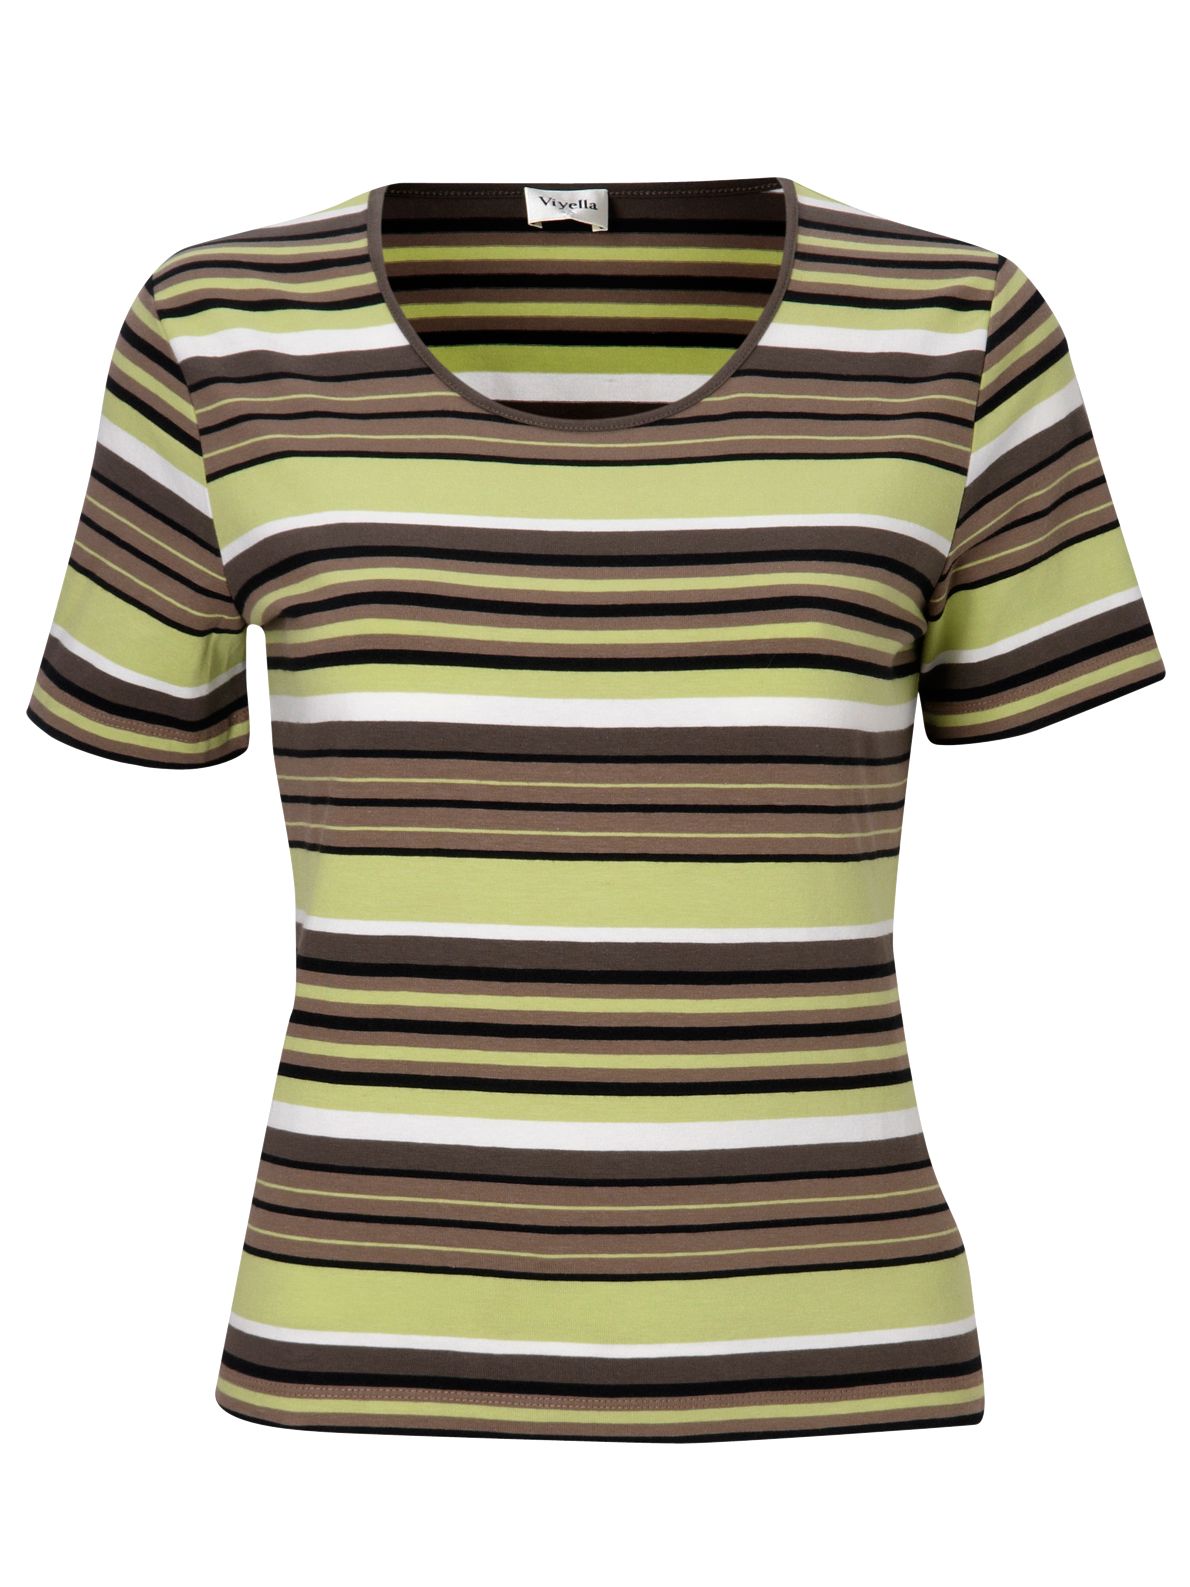 Viyella Stripe Short Sleeve T-Shirt, Khaki